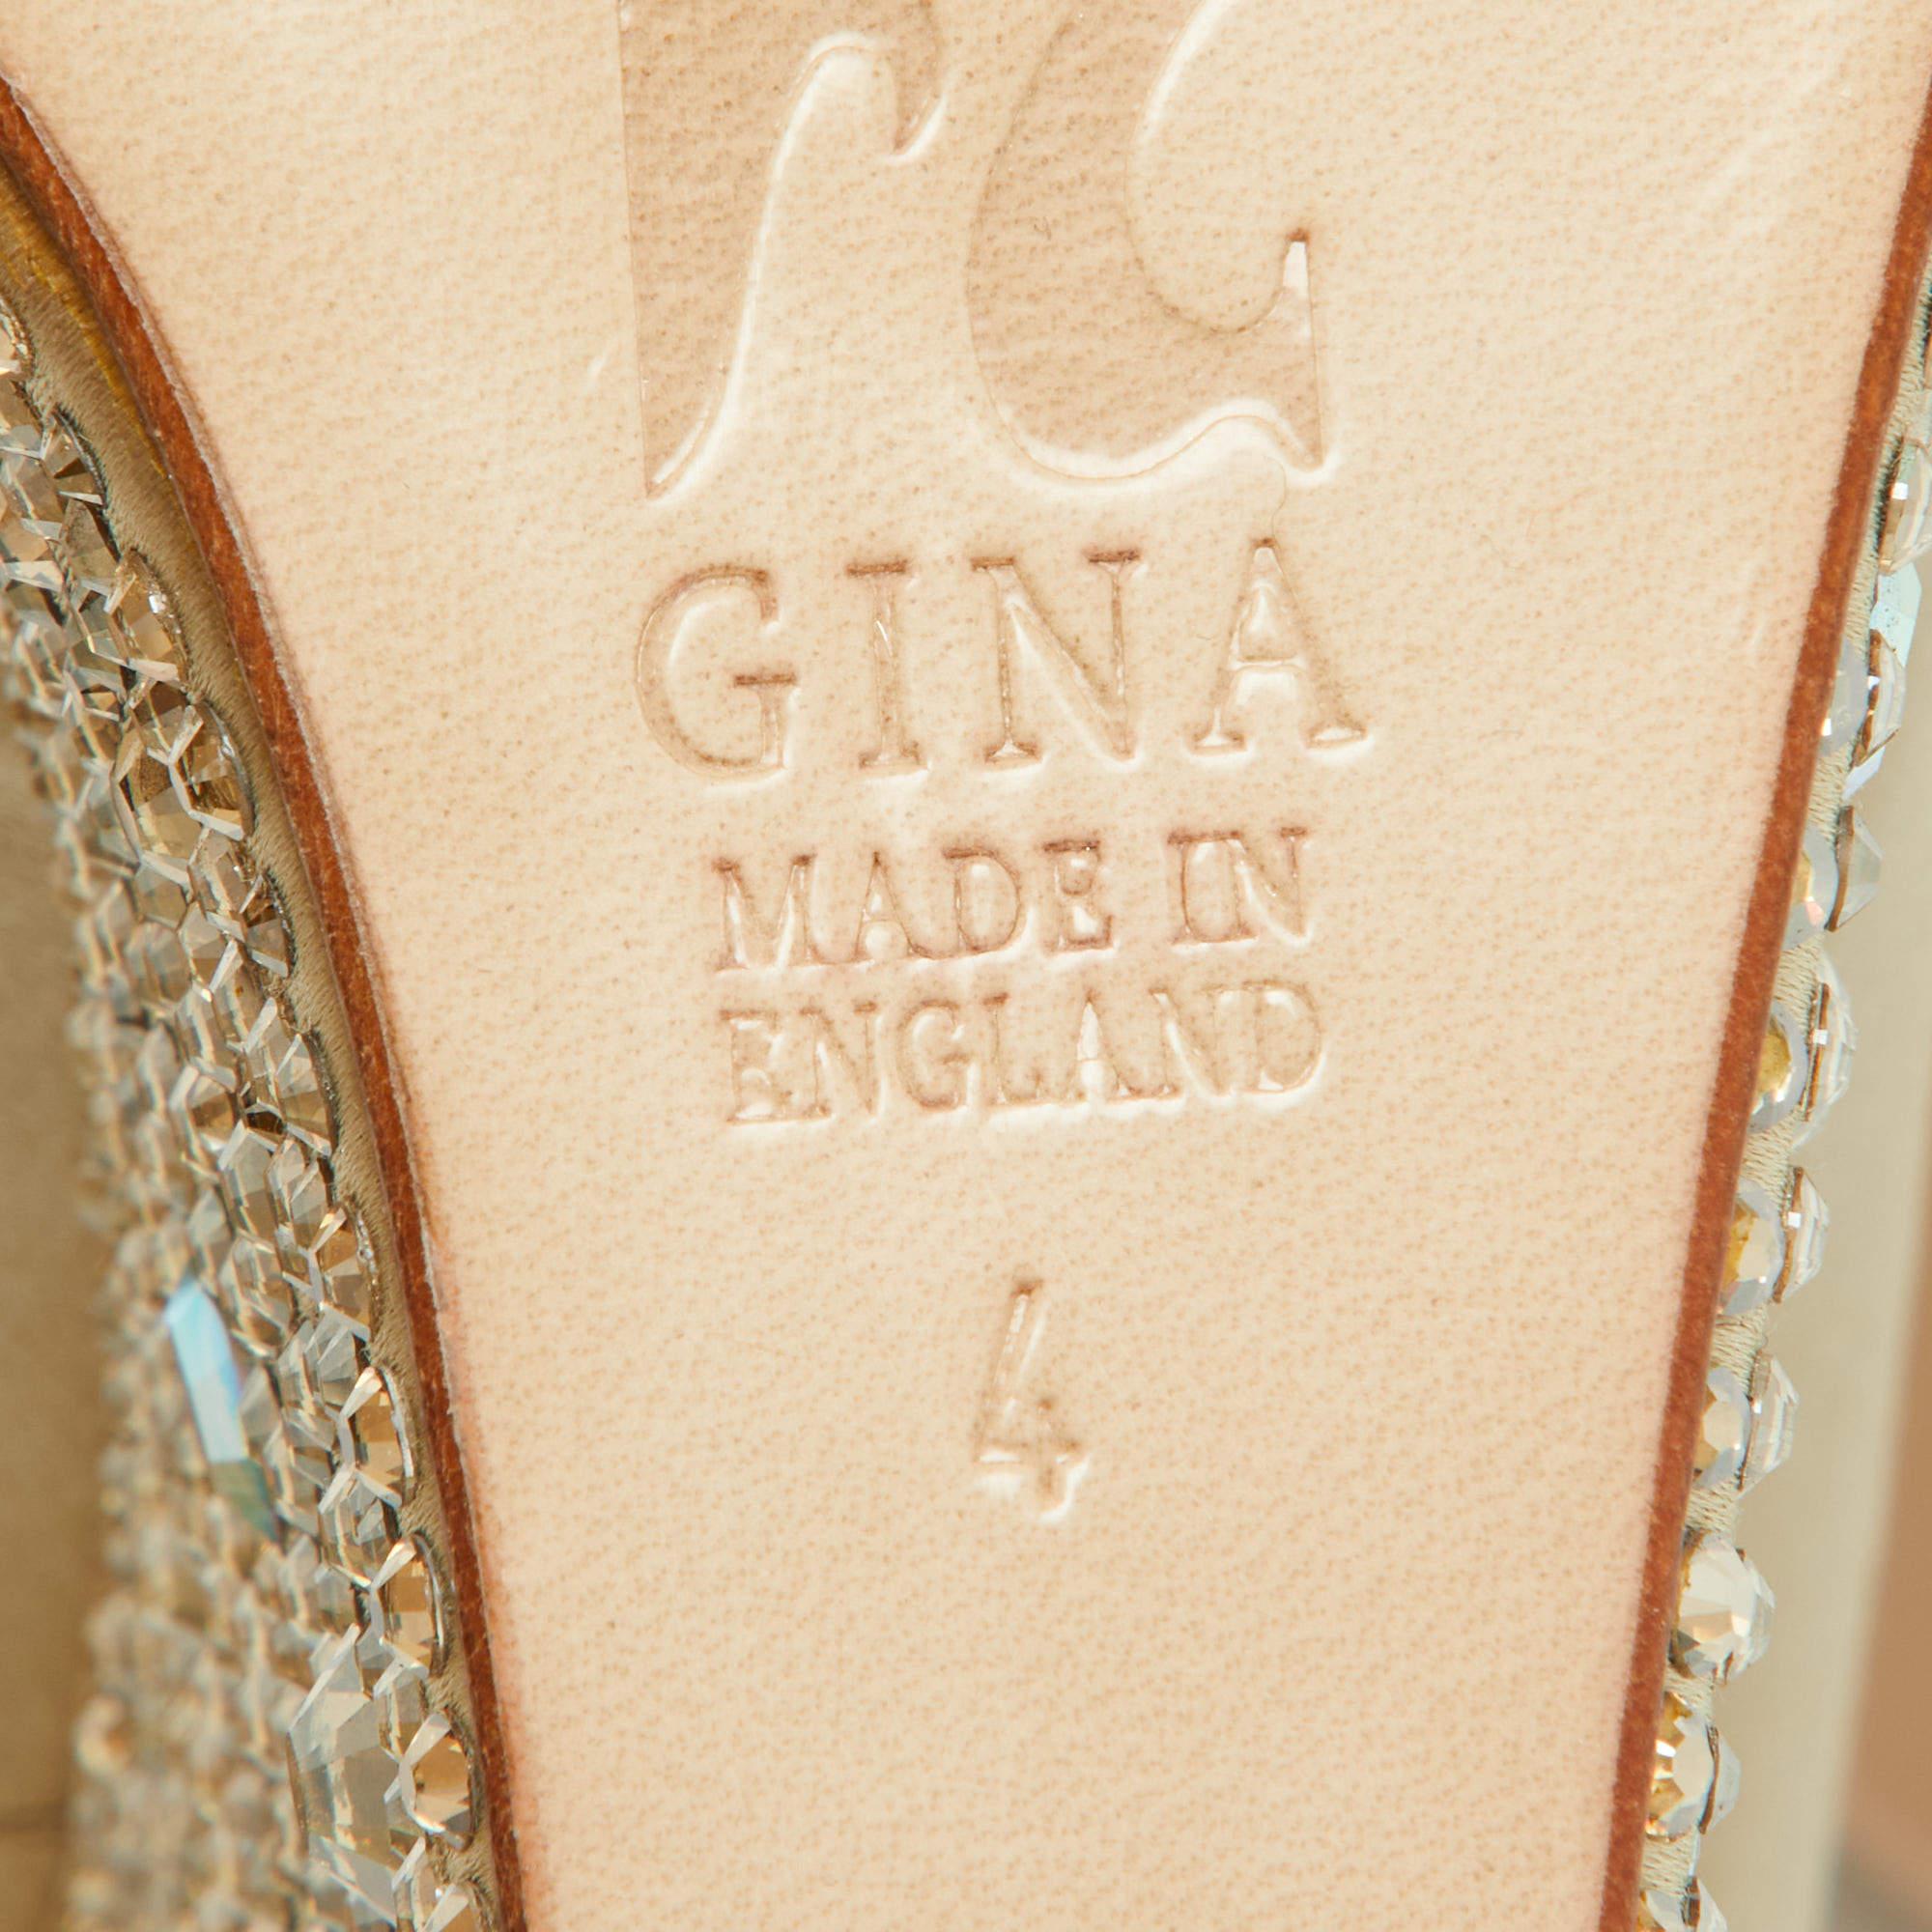 Gina Beige Crystal Embellished Satin Belle Open Toe Wedge Pumps Size 37 For Sale 4